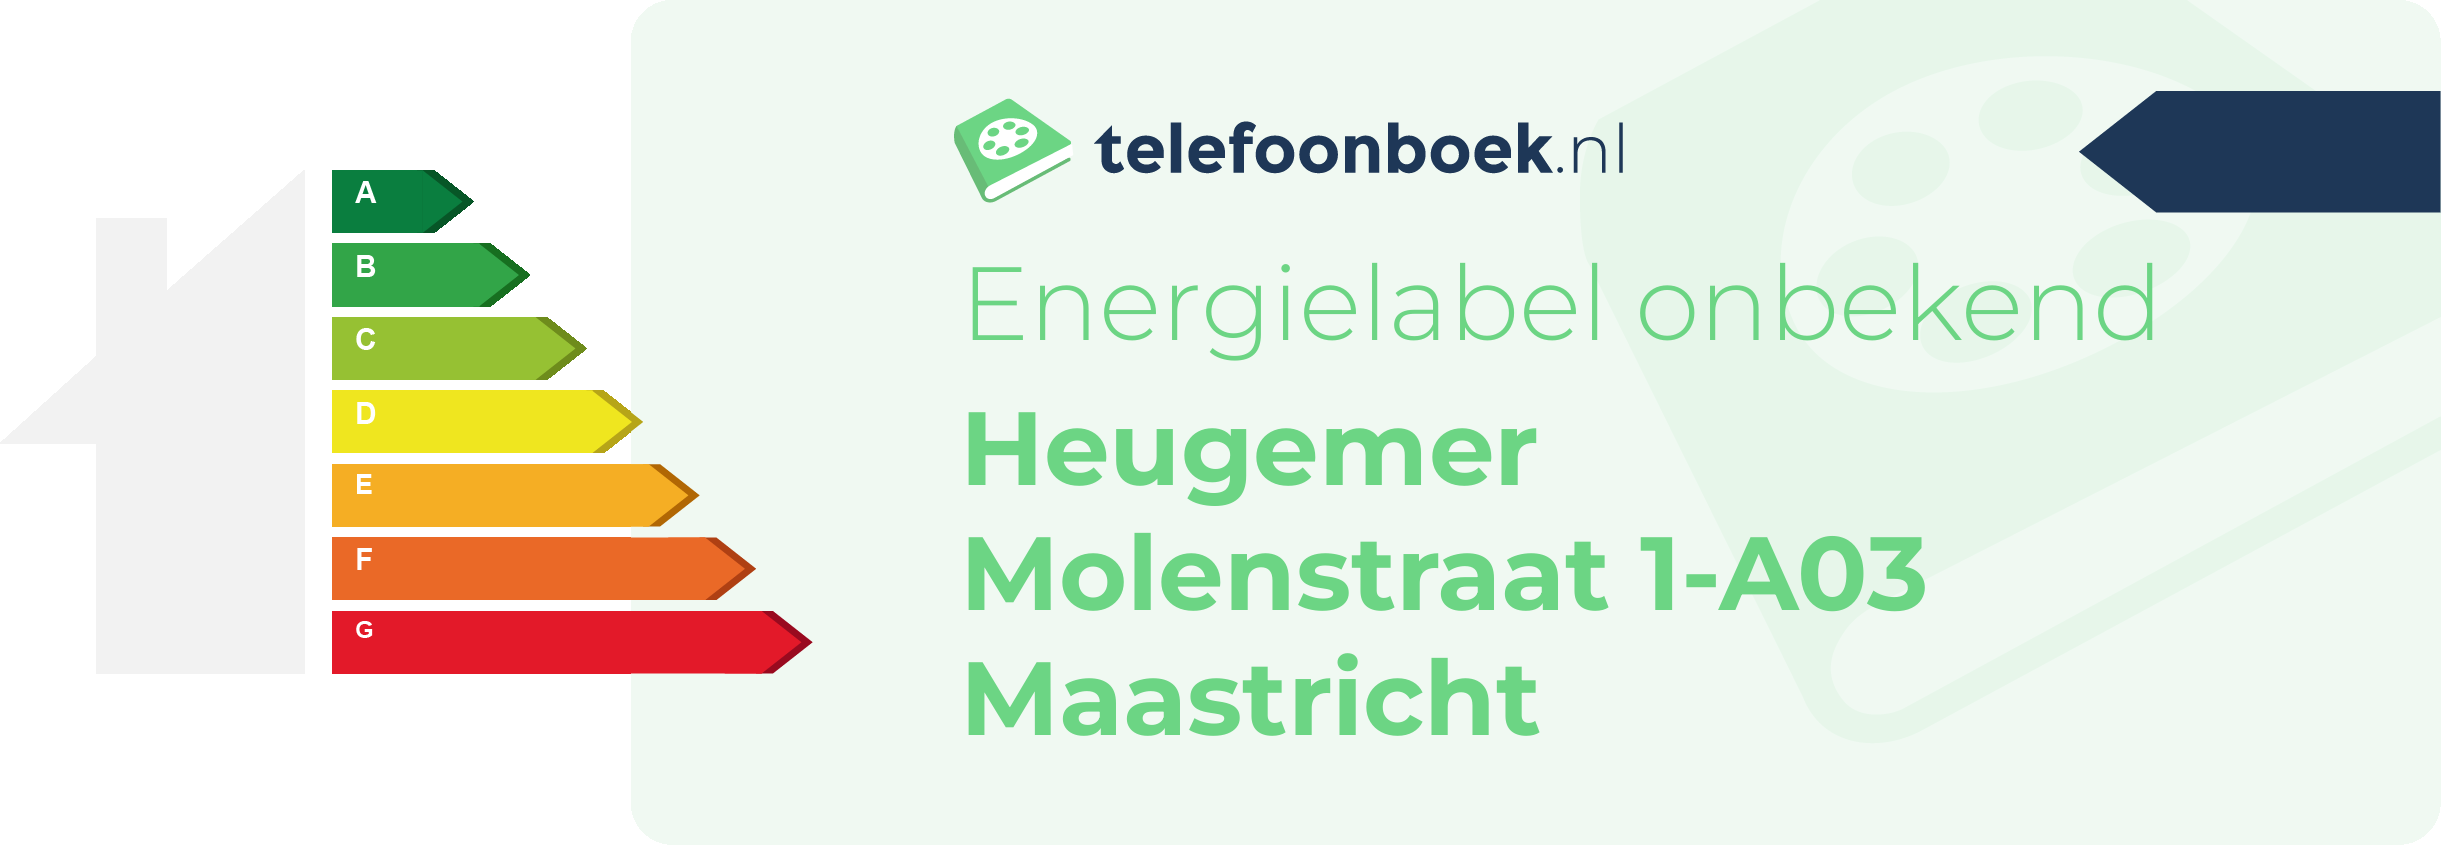 Energielabel Heugemer Molenstraat 1-A03 Maastricht